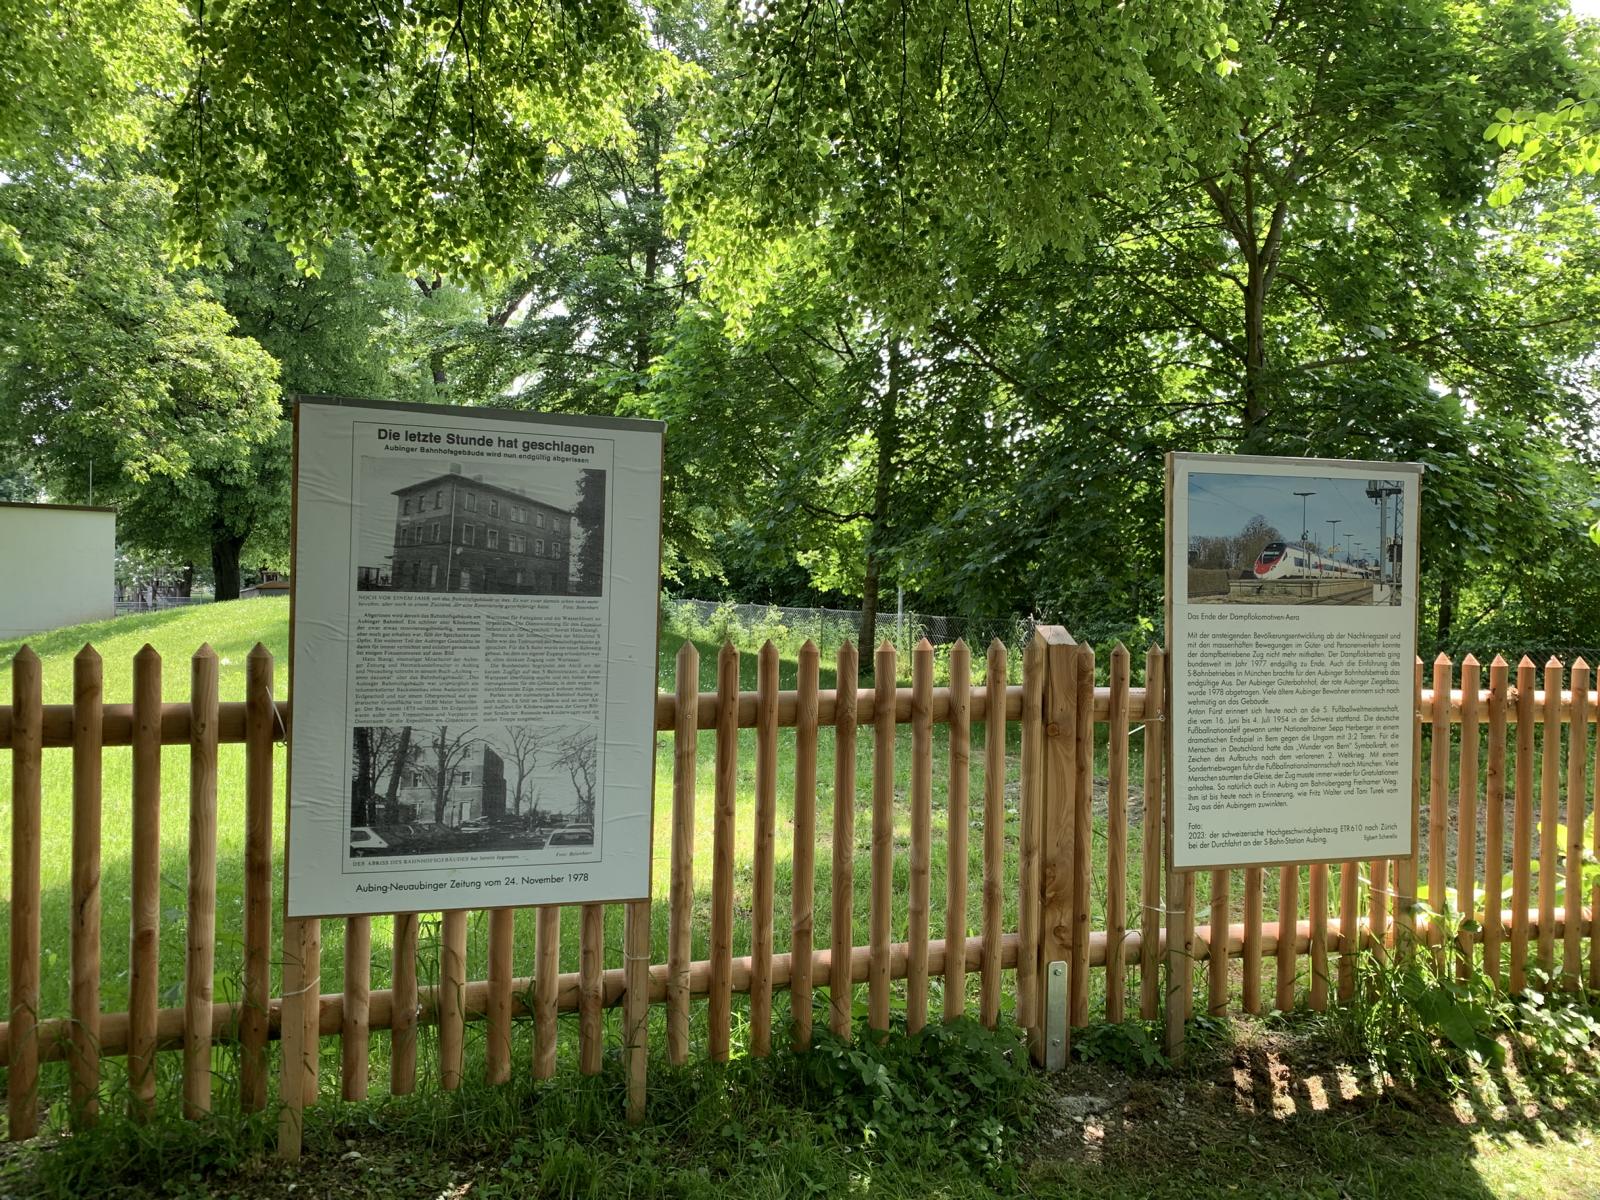 Voilà: Am Zaun des Aubinger Pfarrzentrums und des THWs Aubing stehen 31 Plakate zur 150-jährigen Geschichte der Bahnlinie München - Buchloe - Kaufering sowie zum früheren Aubinger Bahnhof.